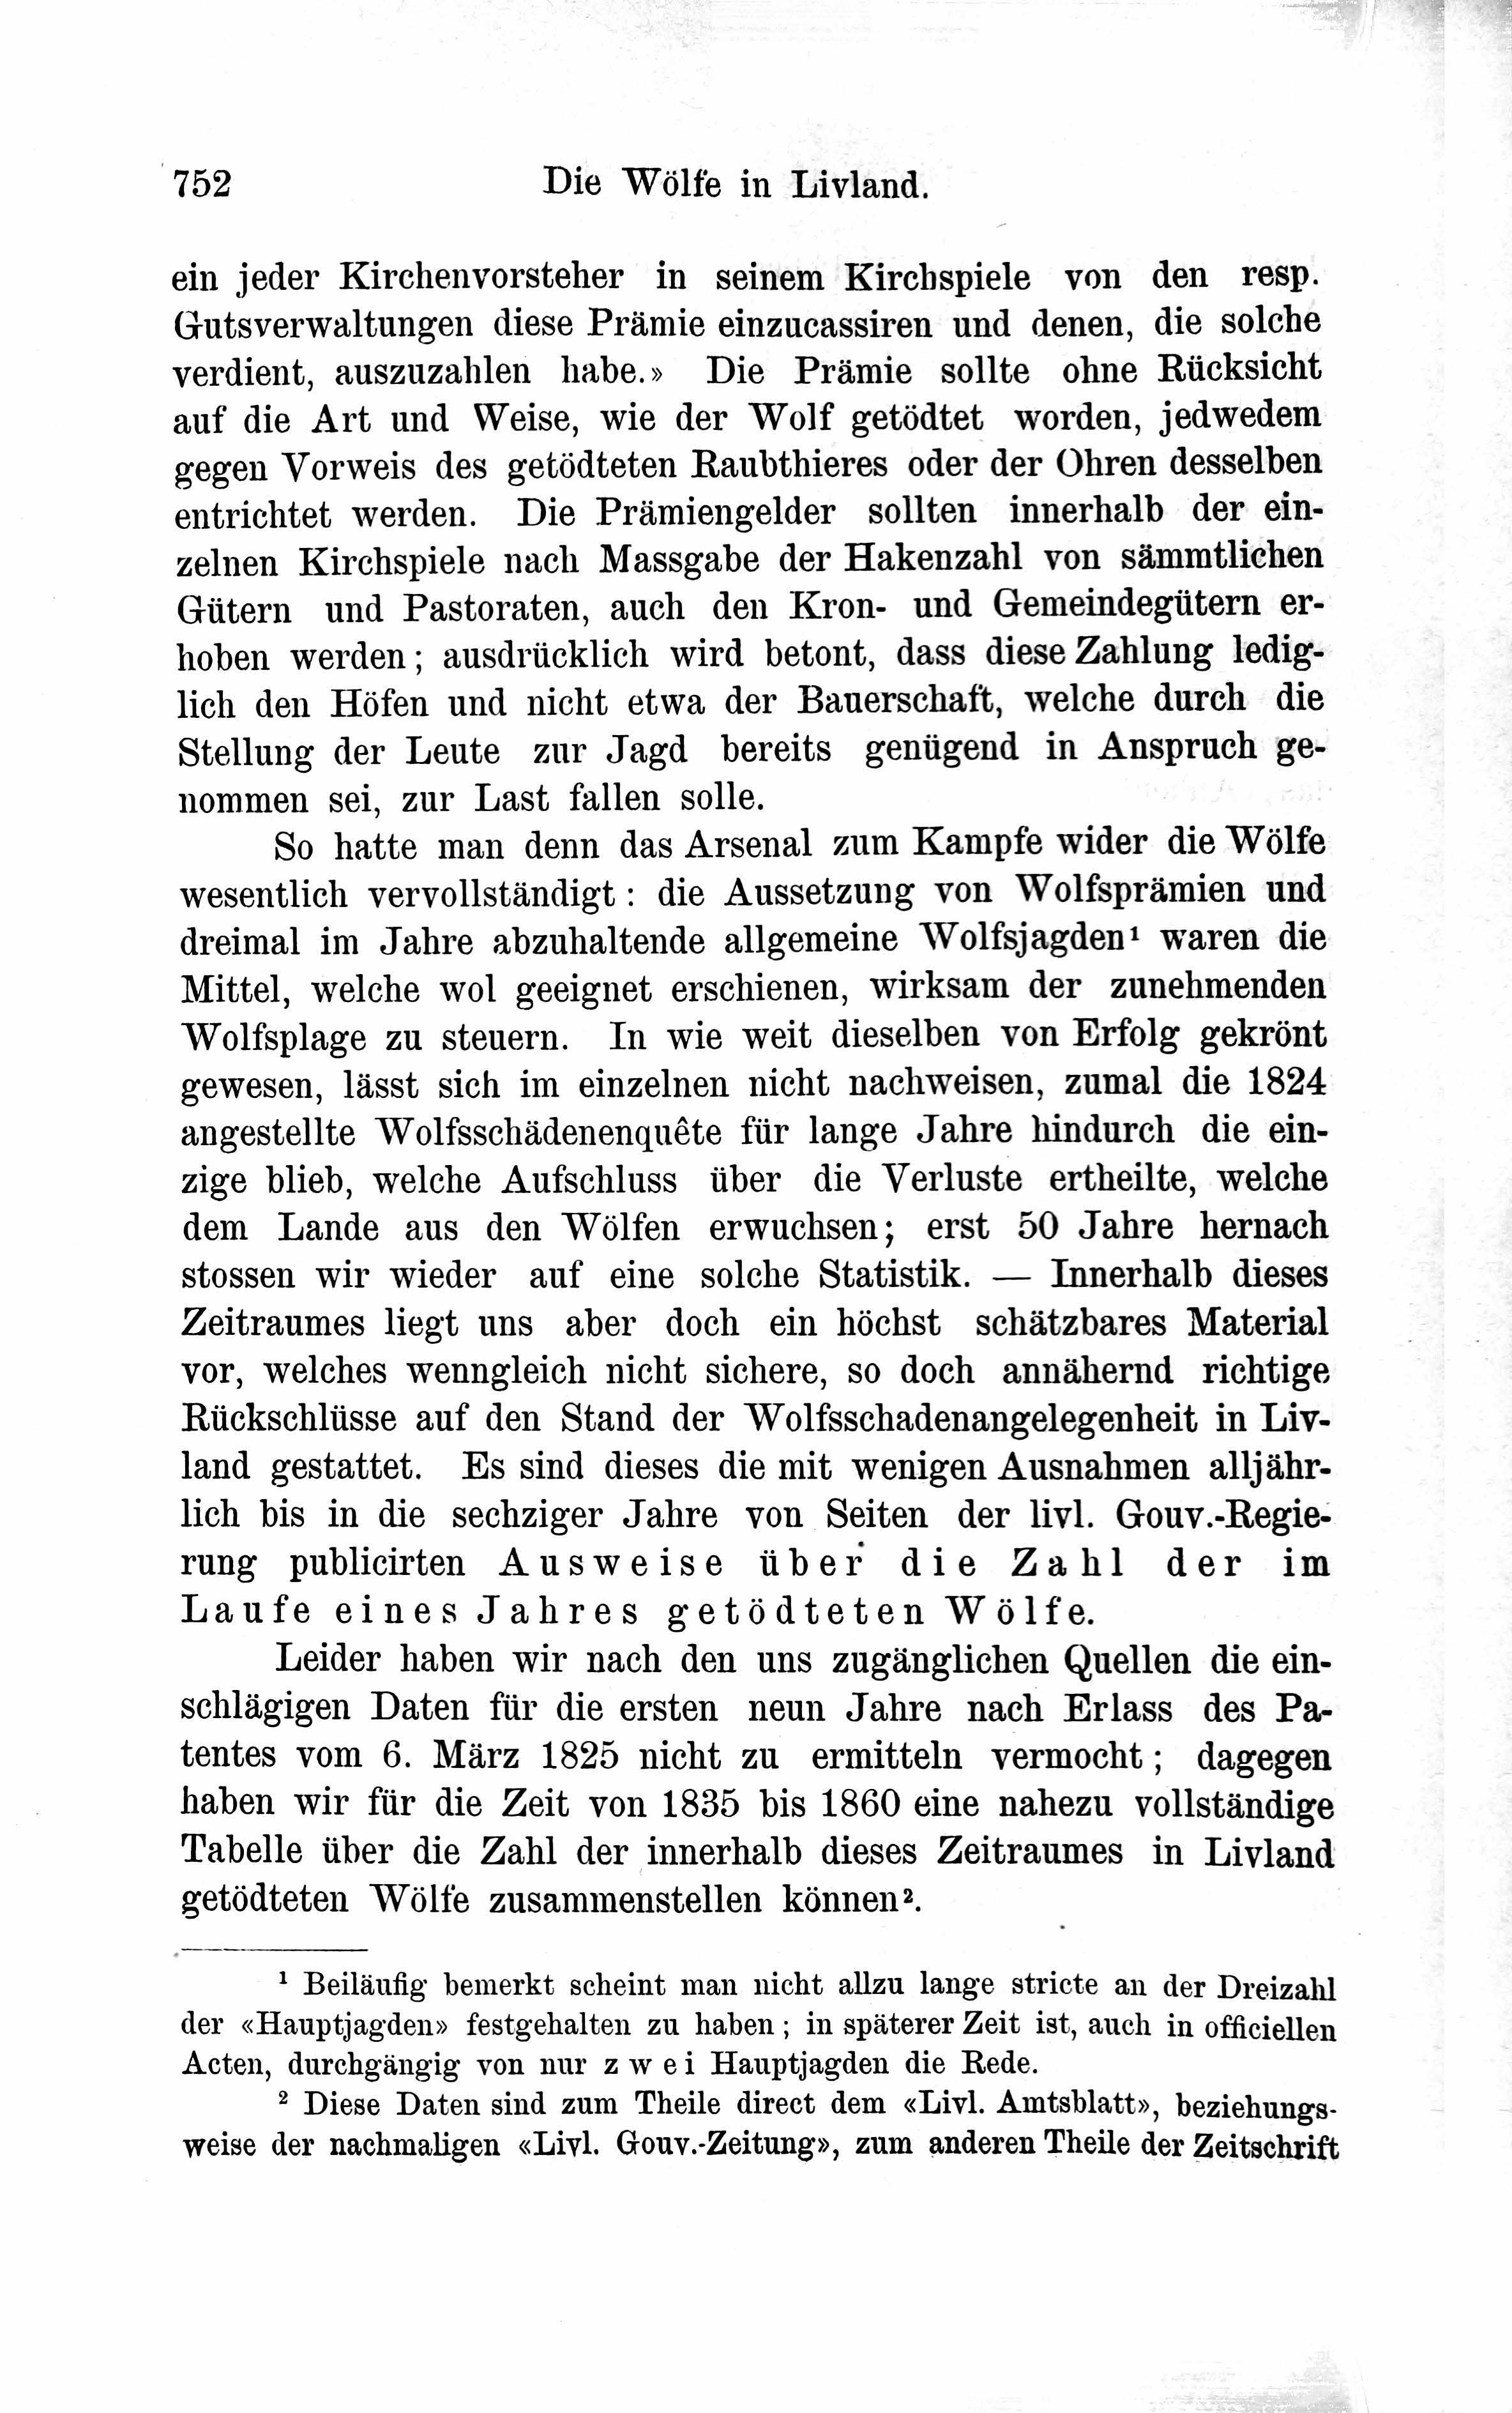 Die Wölfe in Livland [2] (1882) | 9. Основной текст